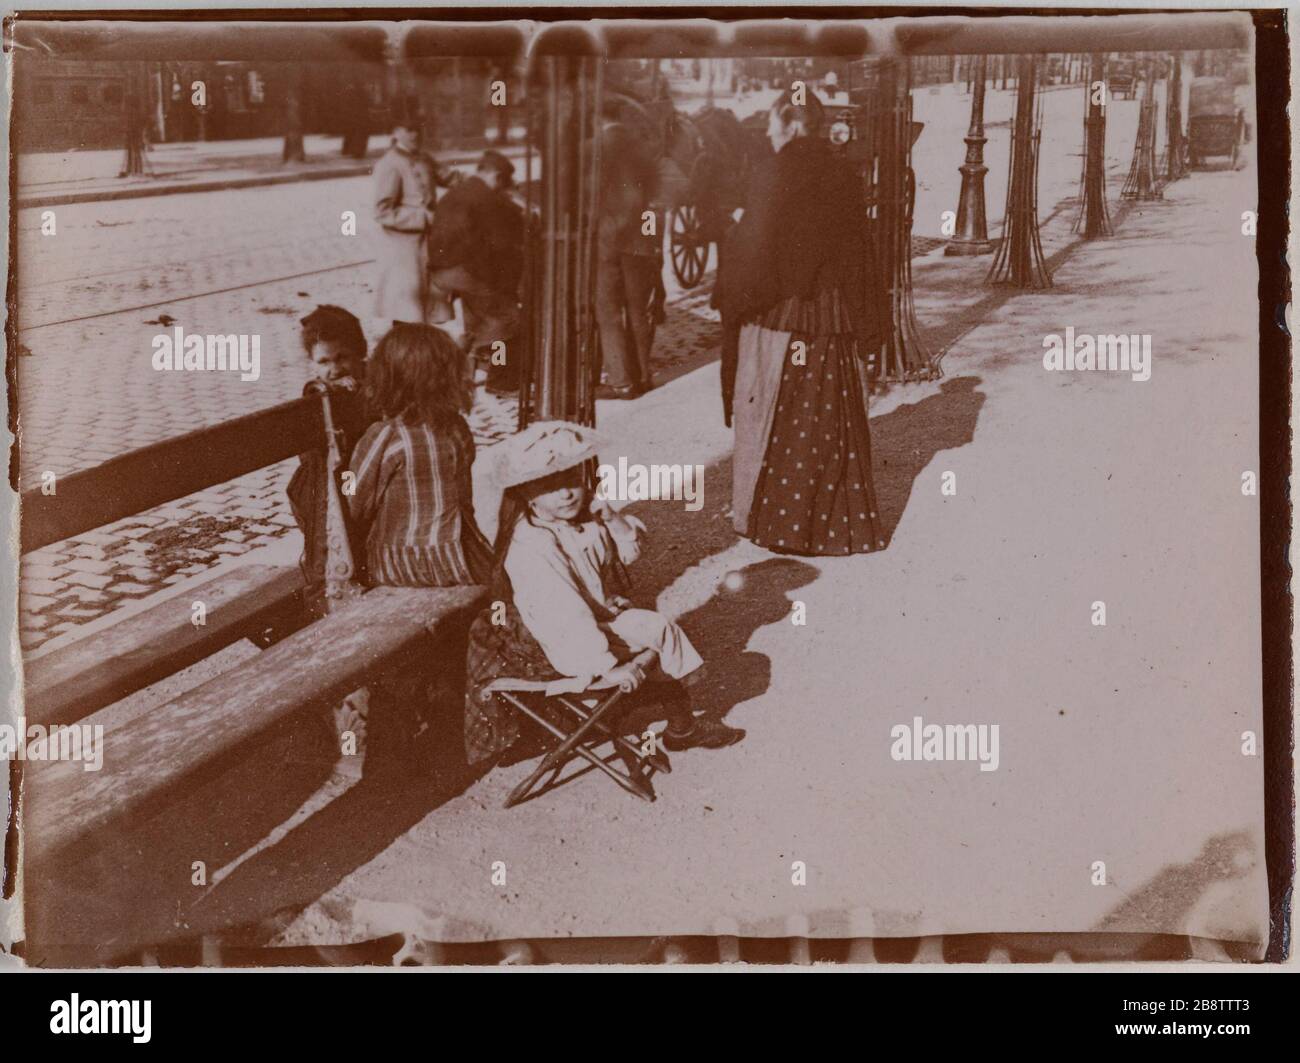 Women and children in the street, near a bench, Paris. "Femme et enfants  dans la rue, près d'un banc, Paris". Photographie anonyme. Aristotype.  Paris, musée Carnavalet Stock Photo - Alamy